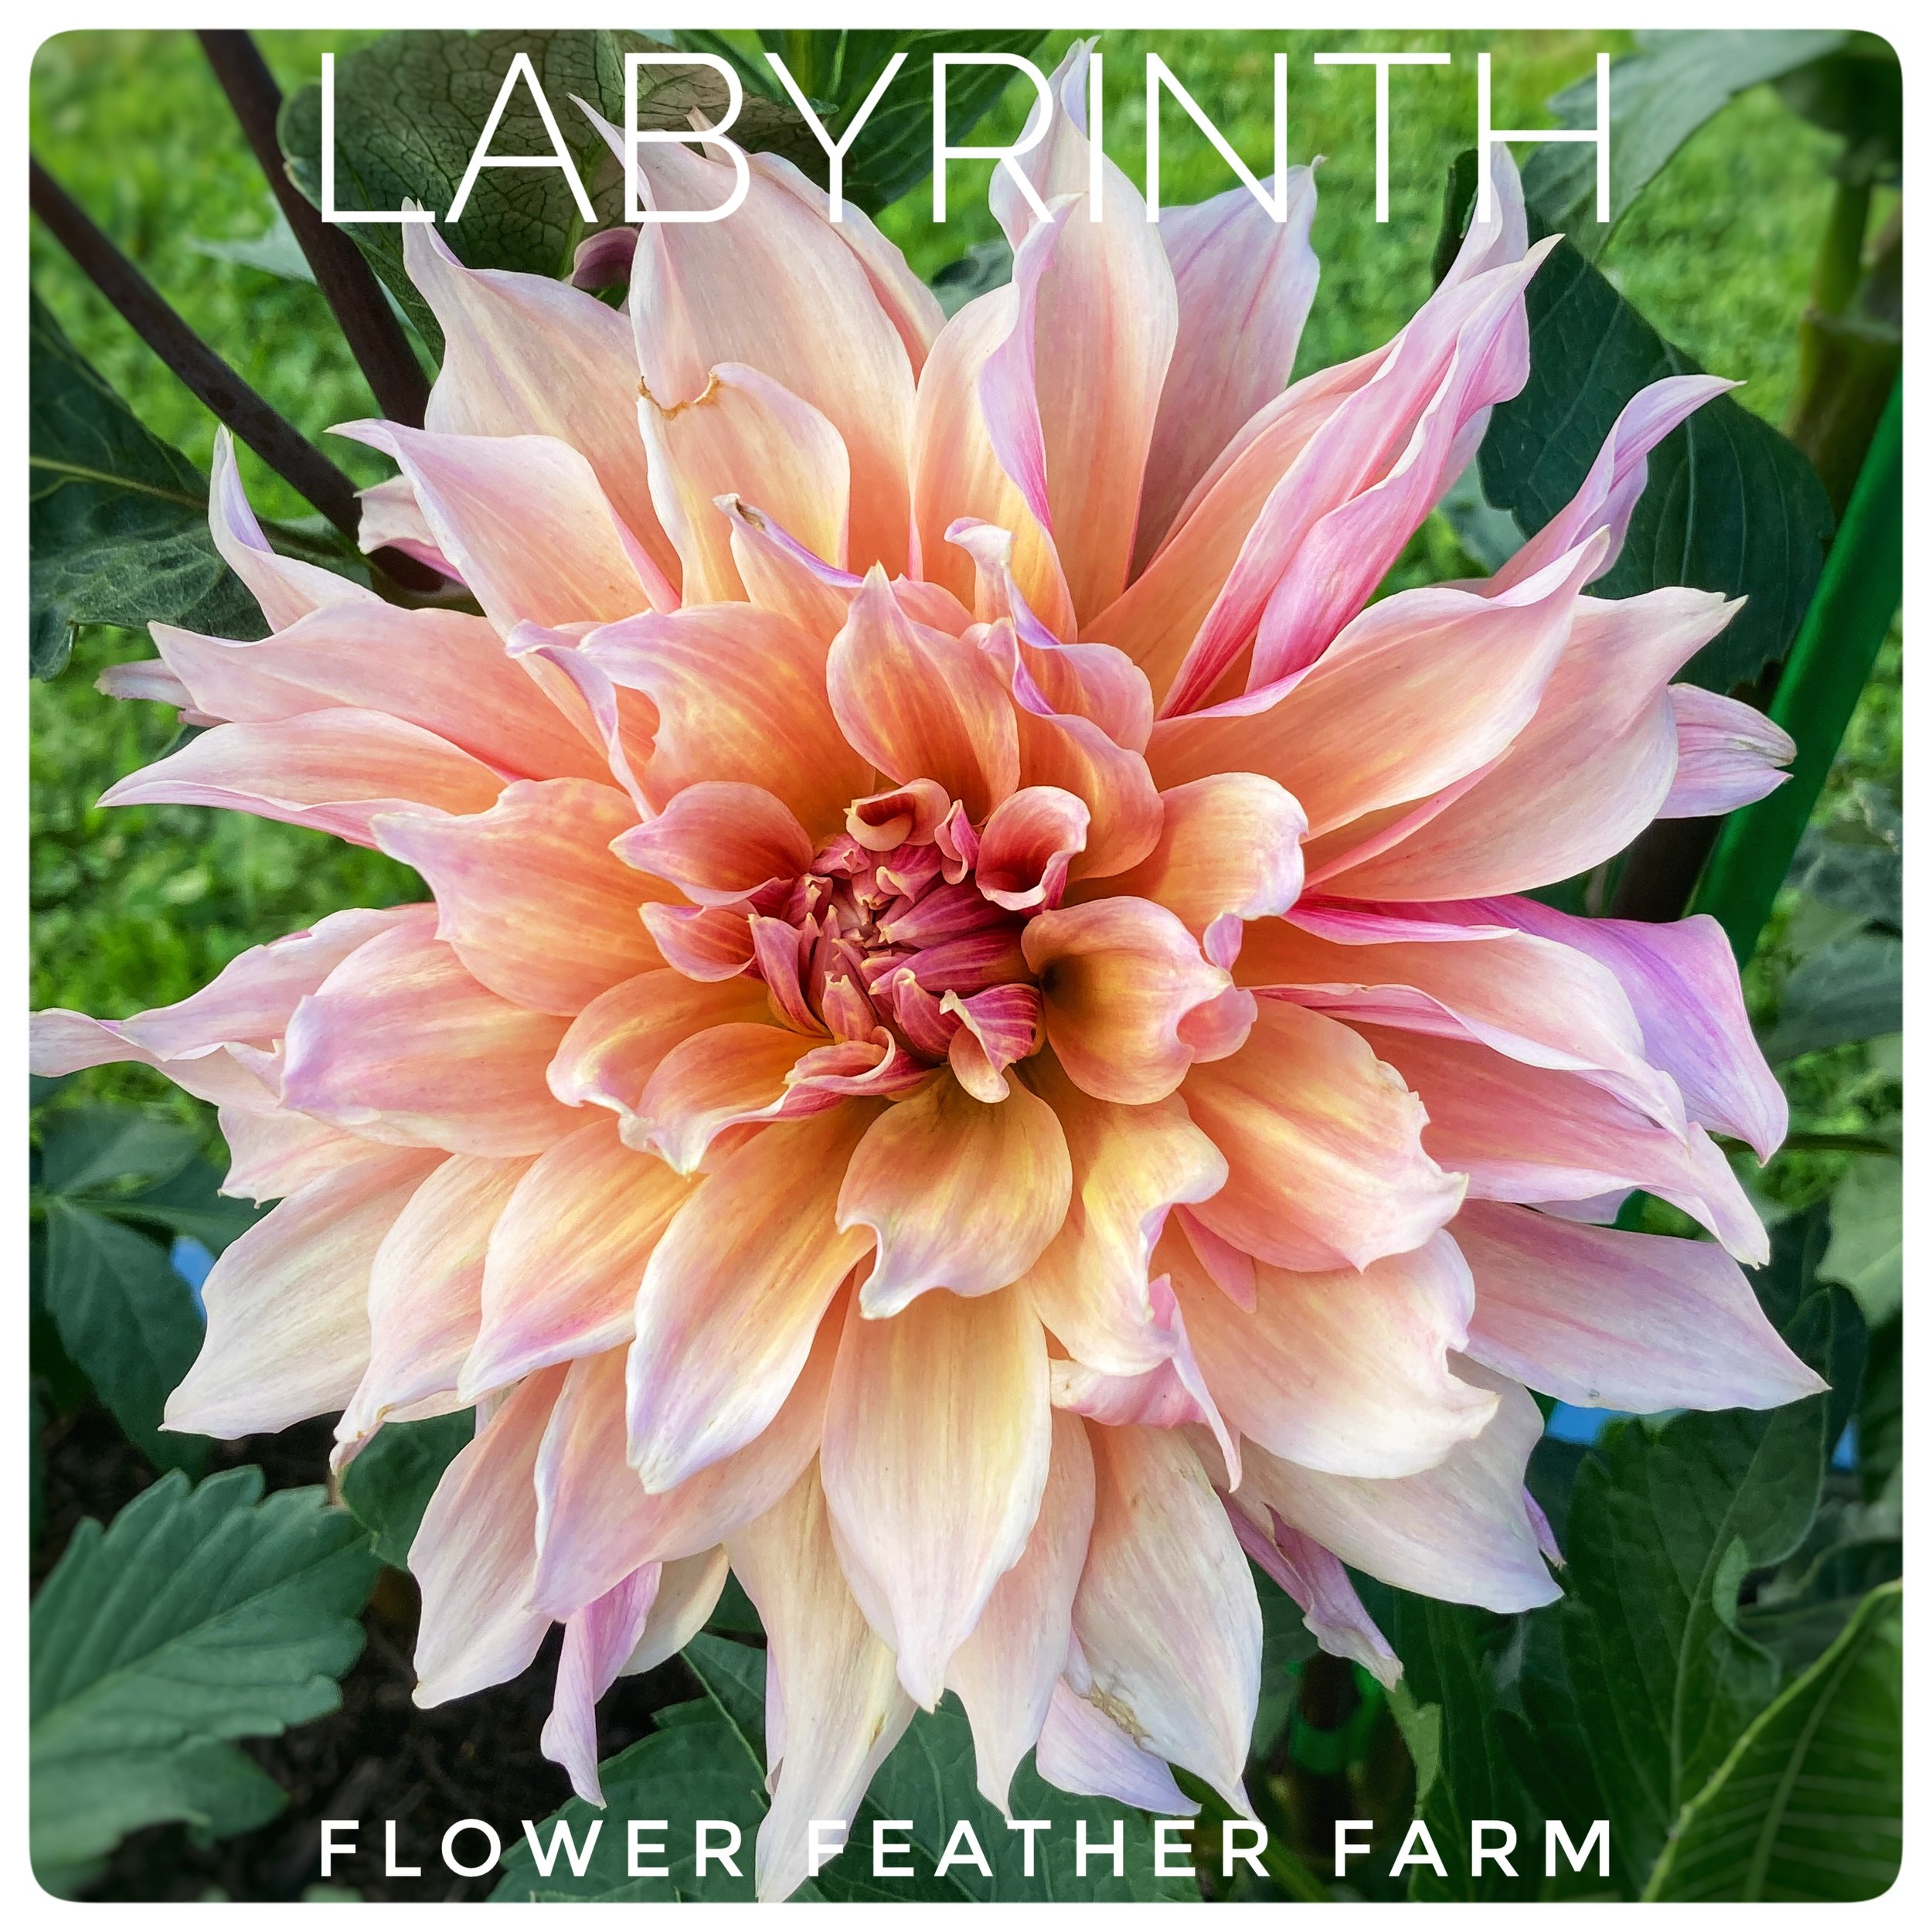 Labyrinth Dahlia at Flower Feather Farm, a dahlia farm